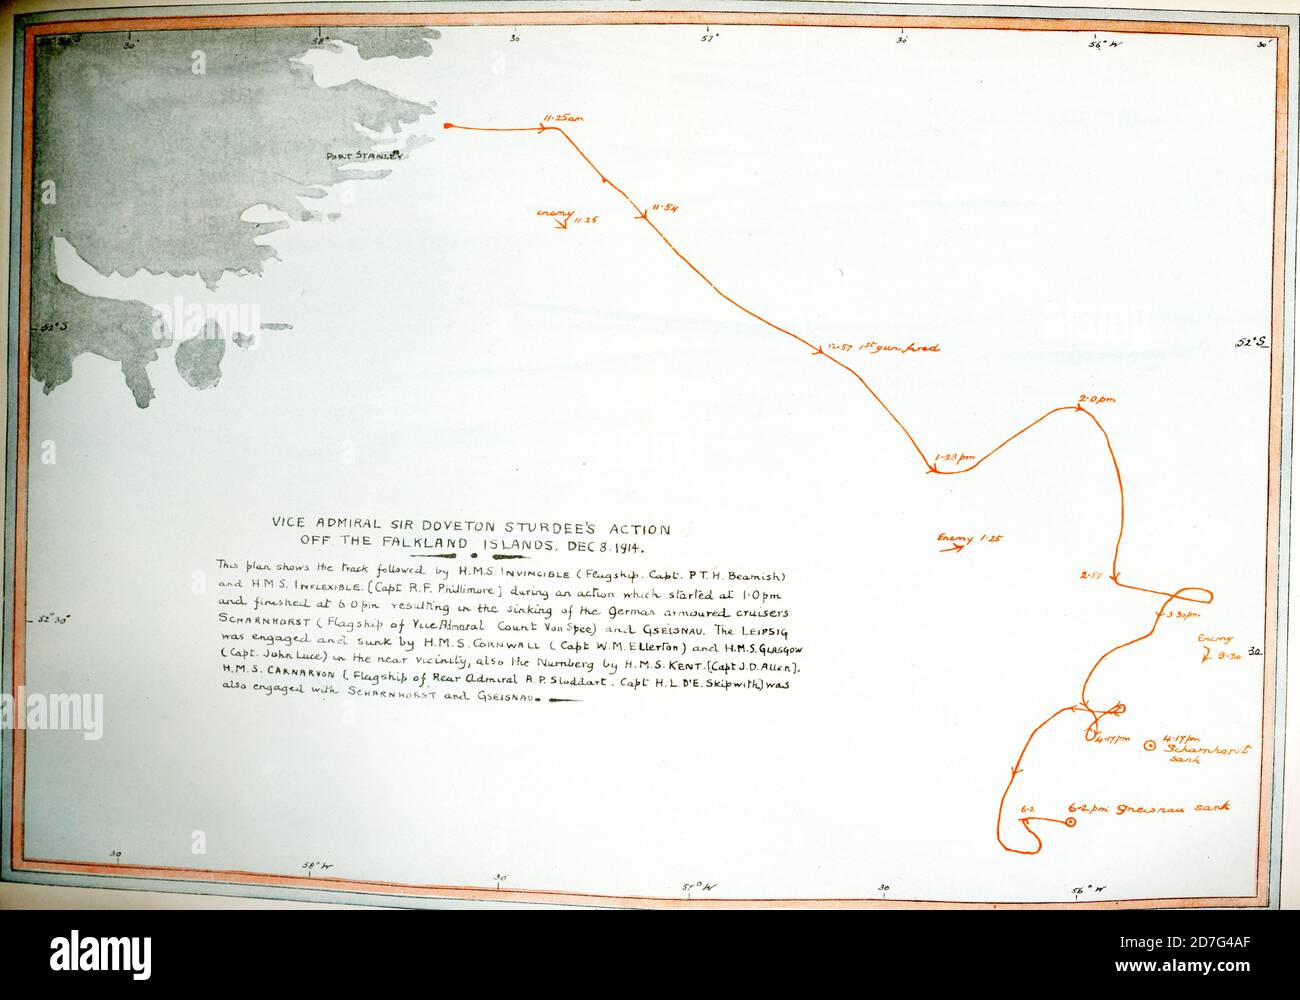 Das Textfeld lautet: Vize-Admiral Sir Doveton Sturdees Aktion vor den Falklandinseln 8. Dez 1914. Dieser Plan zeigt die Strecke gefolgt von HMS Invincible (Flaggschiff Capt P T H Beamish) und HMS Inflexible (Capt R F Phillimore) während einer Aktion, die um 1.0 Uhr begann und um 6.0 Uhr endete, was zum Untergang der deutschen Panzerkreuzer Scharnhorst führte (Flaggschiff von Vizeadmiral Graf von Spee) und Gseisnau. Die Leippsig wurde von HMS Cornwall (Capt W M Ellerton) und HMS Glasgow (Capt John Luce) in der näheren Umgebung engagiert und versenkt, auch der Nürnberg von der HMS Kent (Capt J D Allen). HMS Carnarvon (F Stockfoto